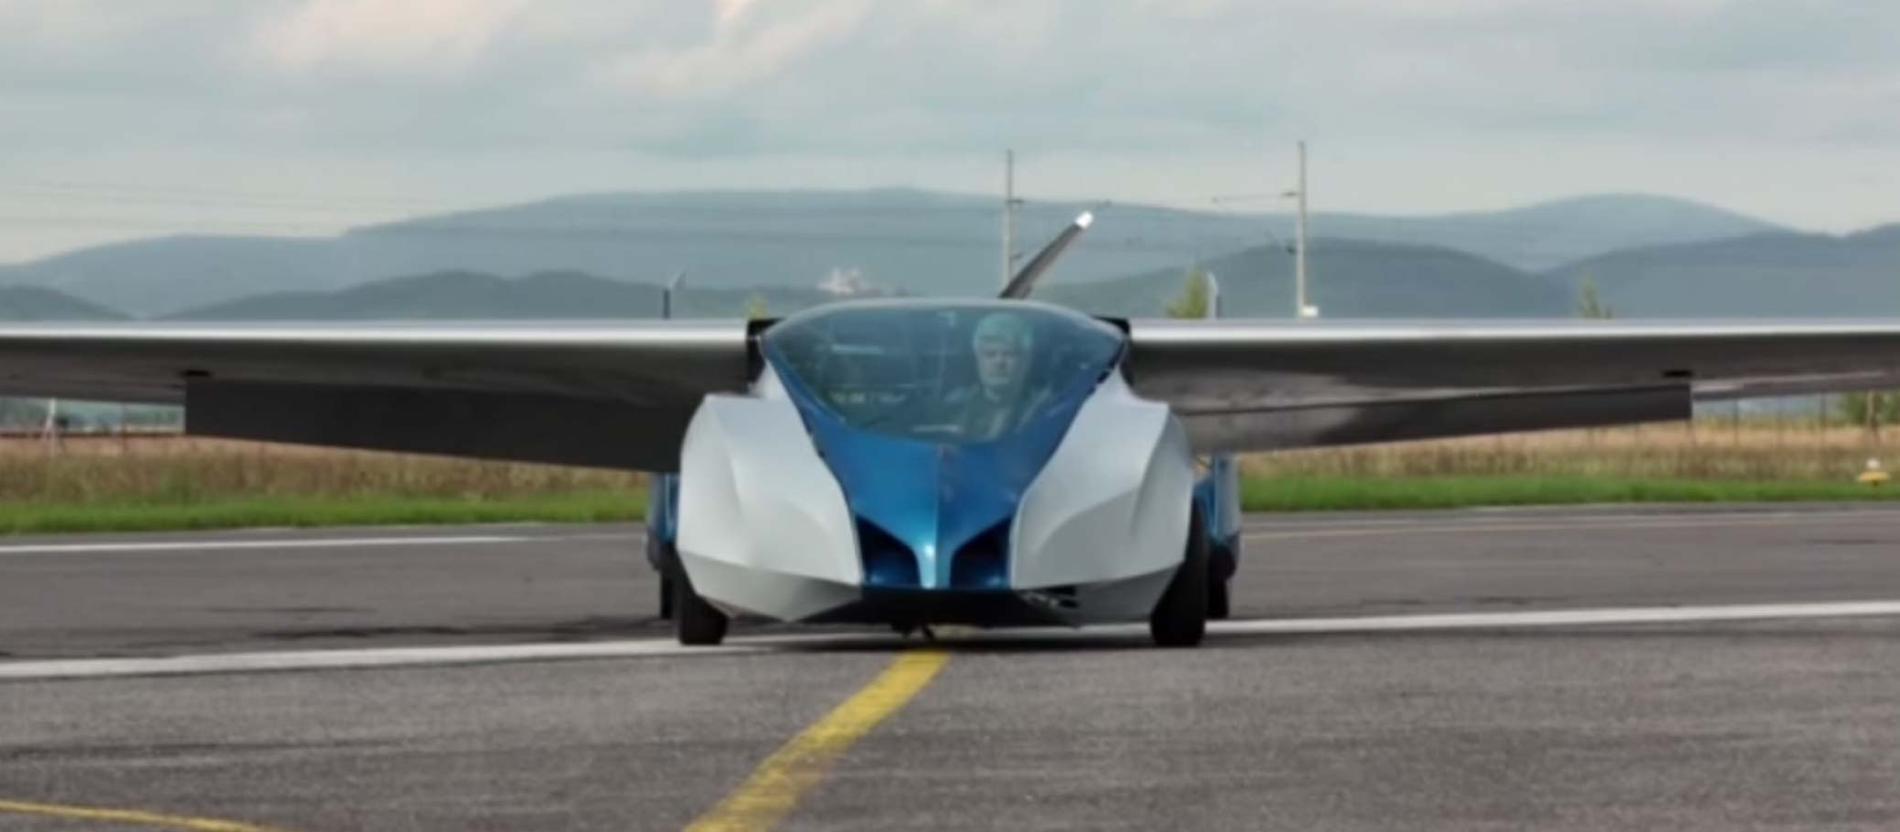 Den flygande bilen Aeromobil med vingarna utfällda.